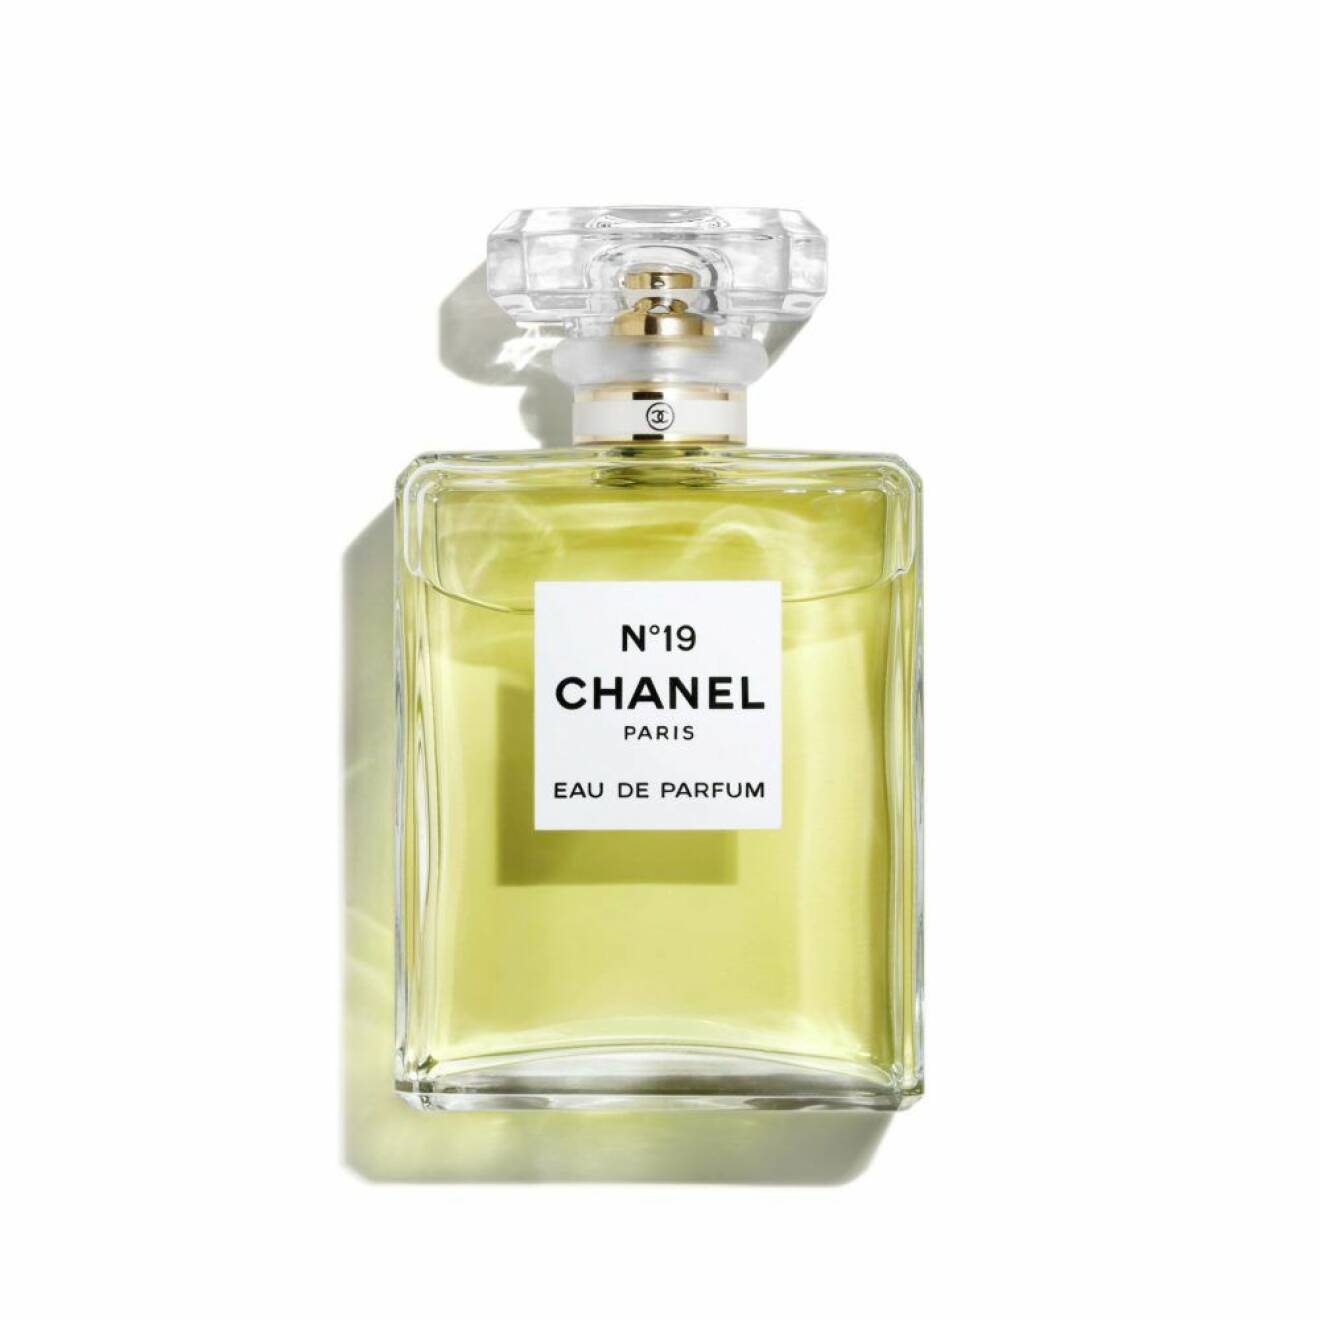 Parfym i den klassiska doften Nr19 av Chanel.